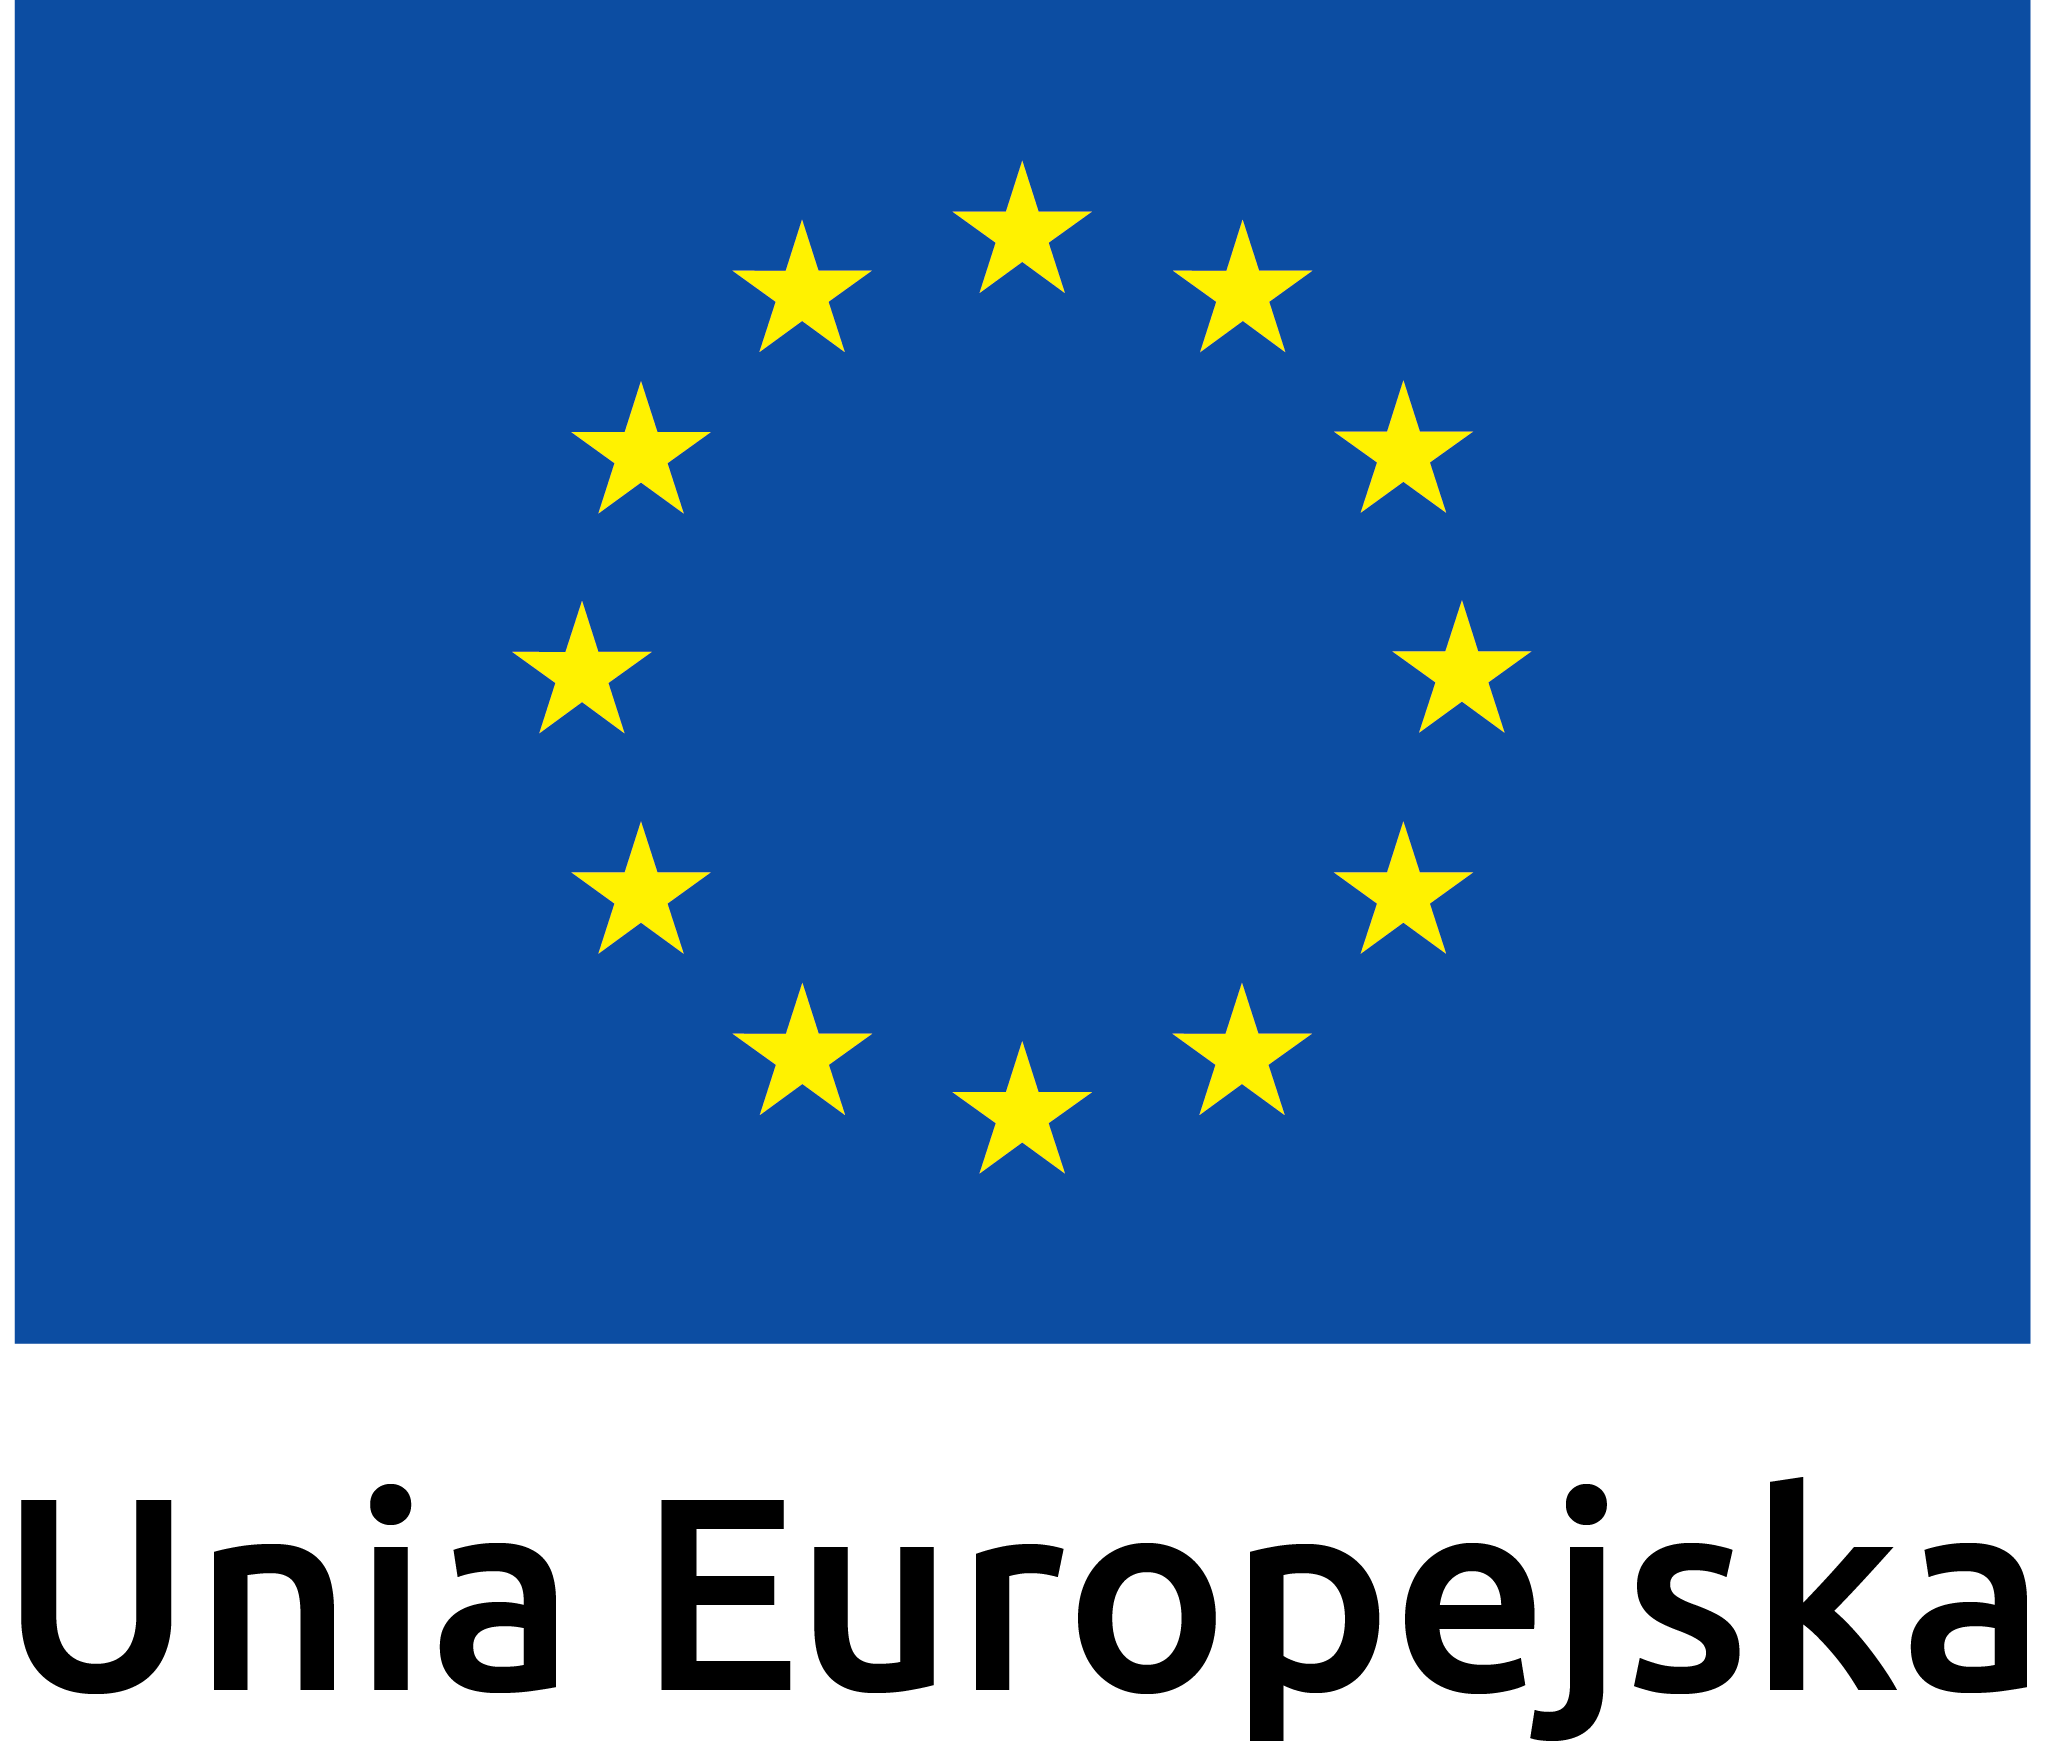 logotyp unii europejskiej